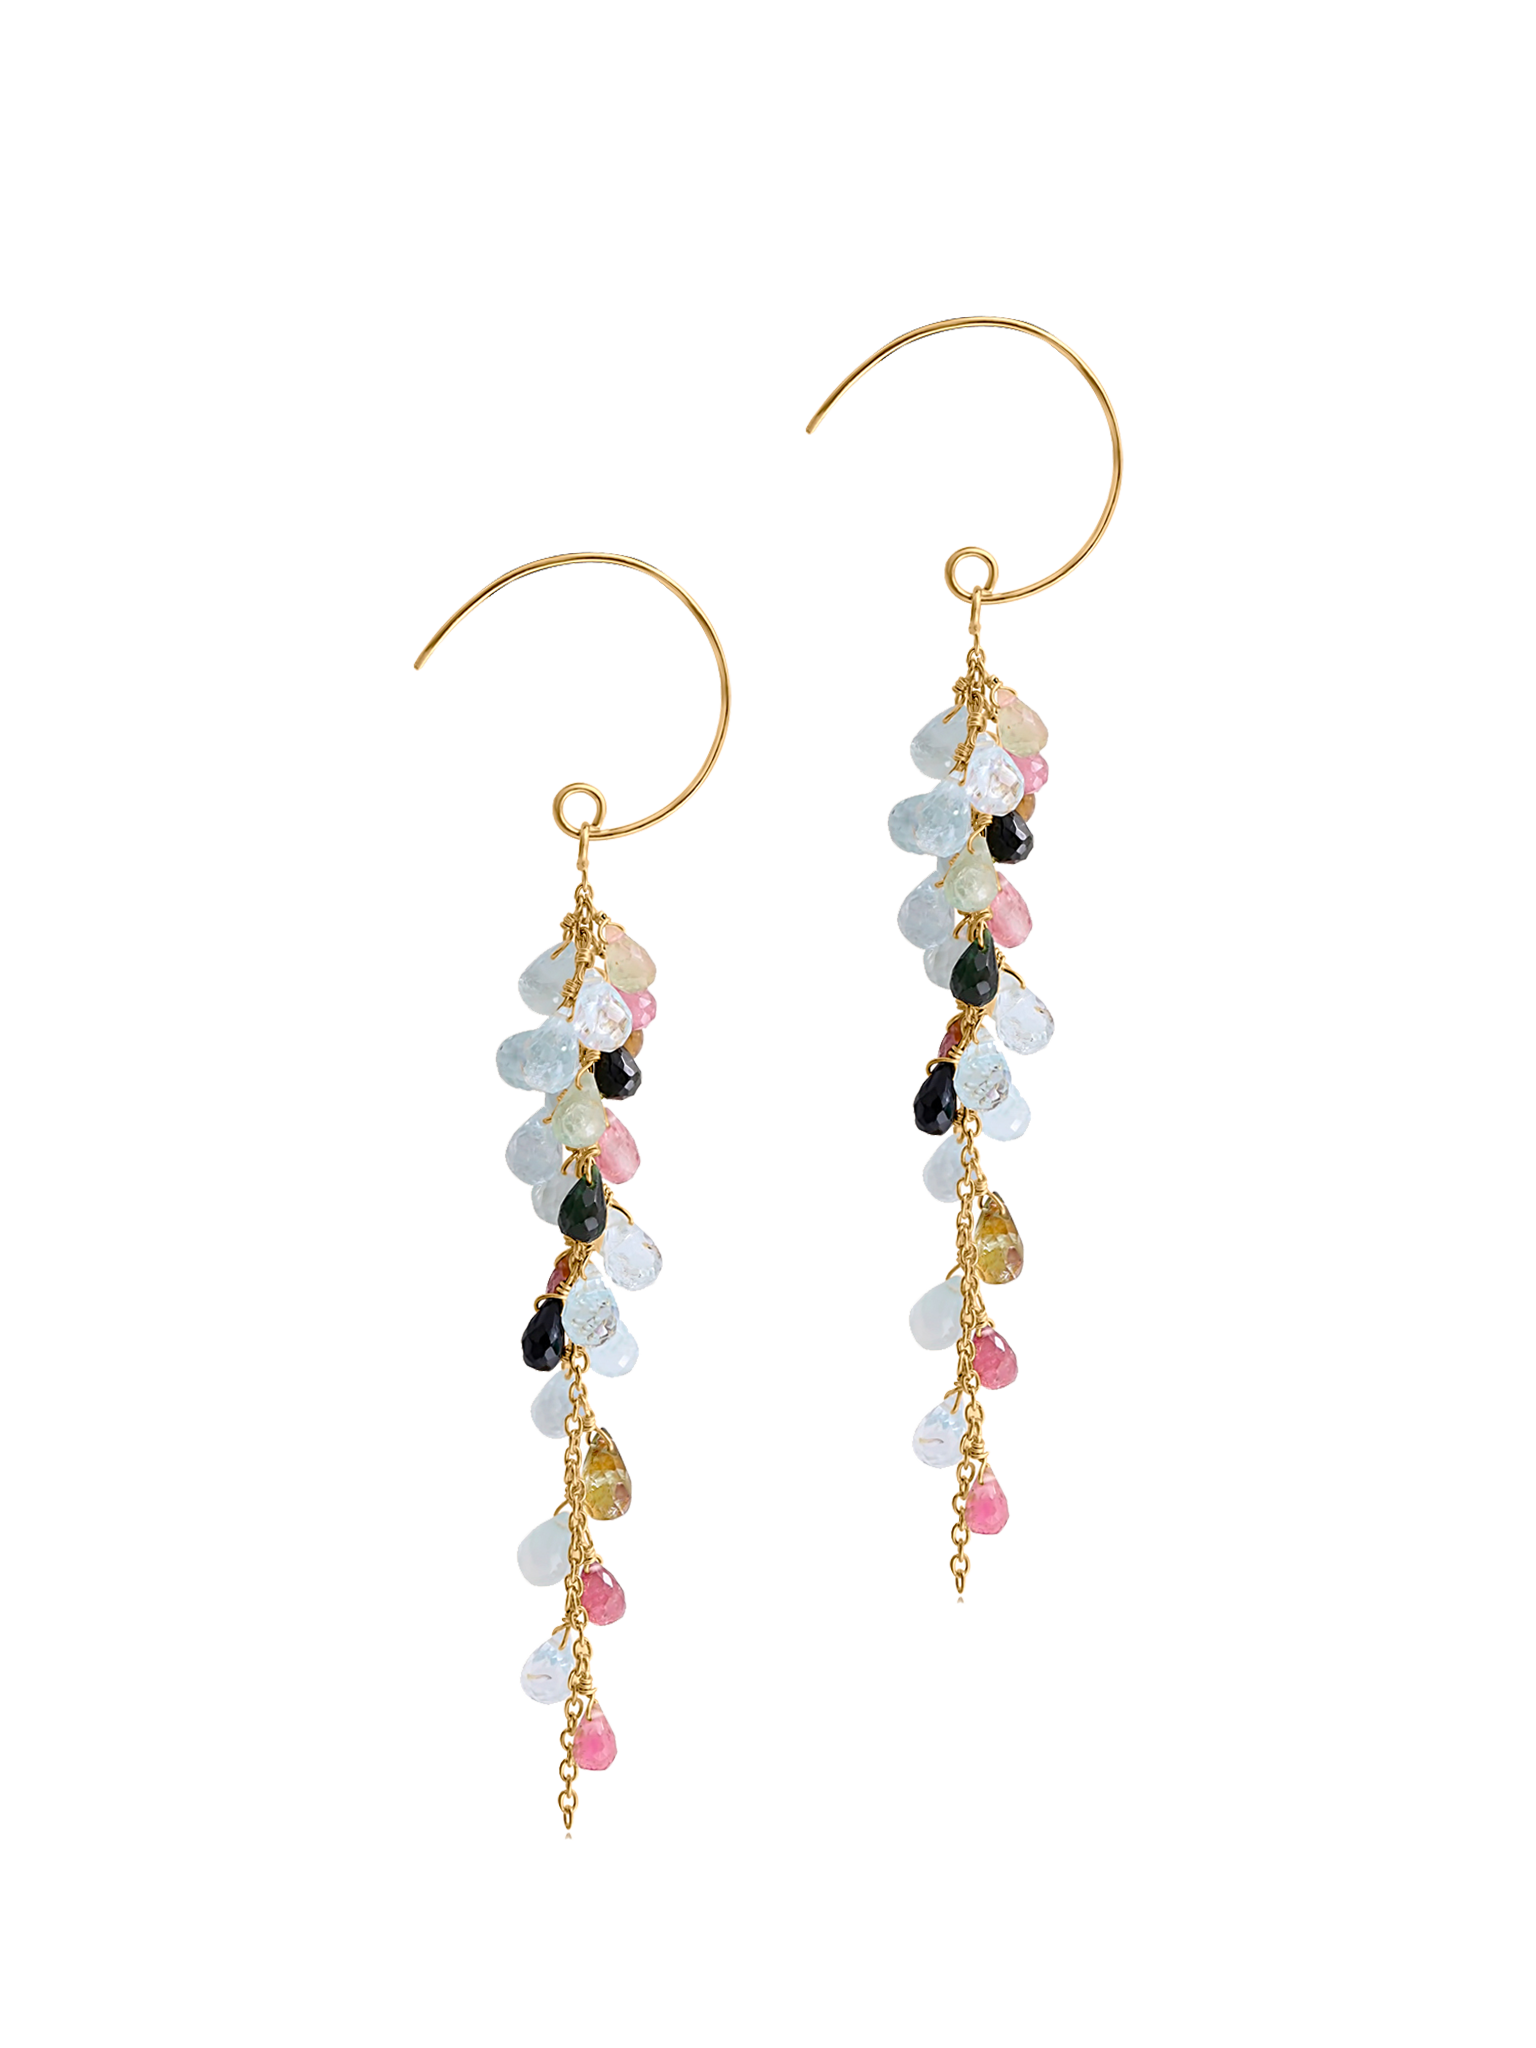 Aiko tourmaline and aquamarine earrings